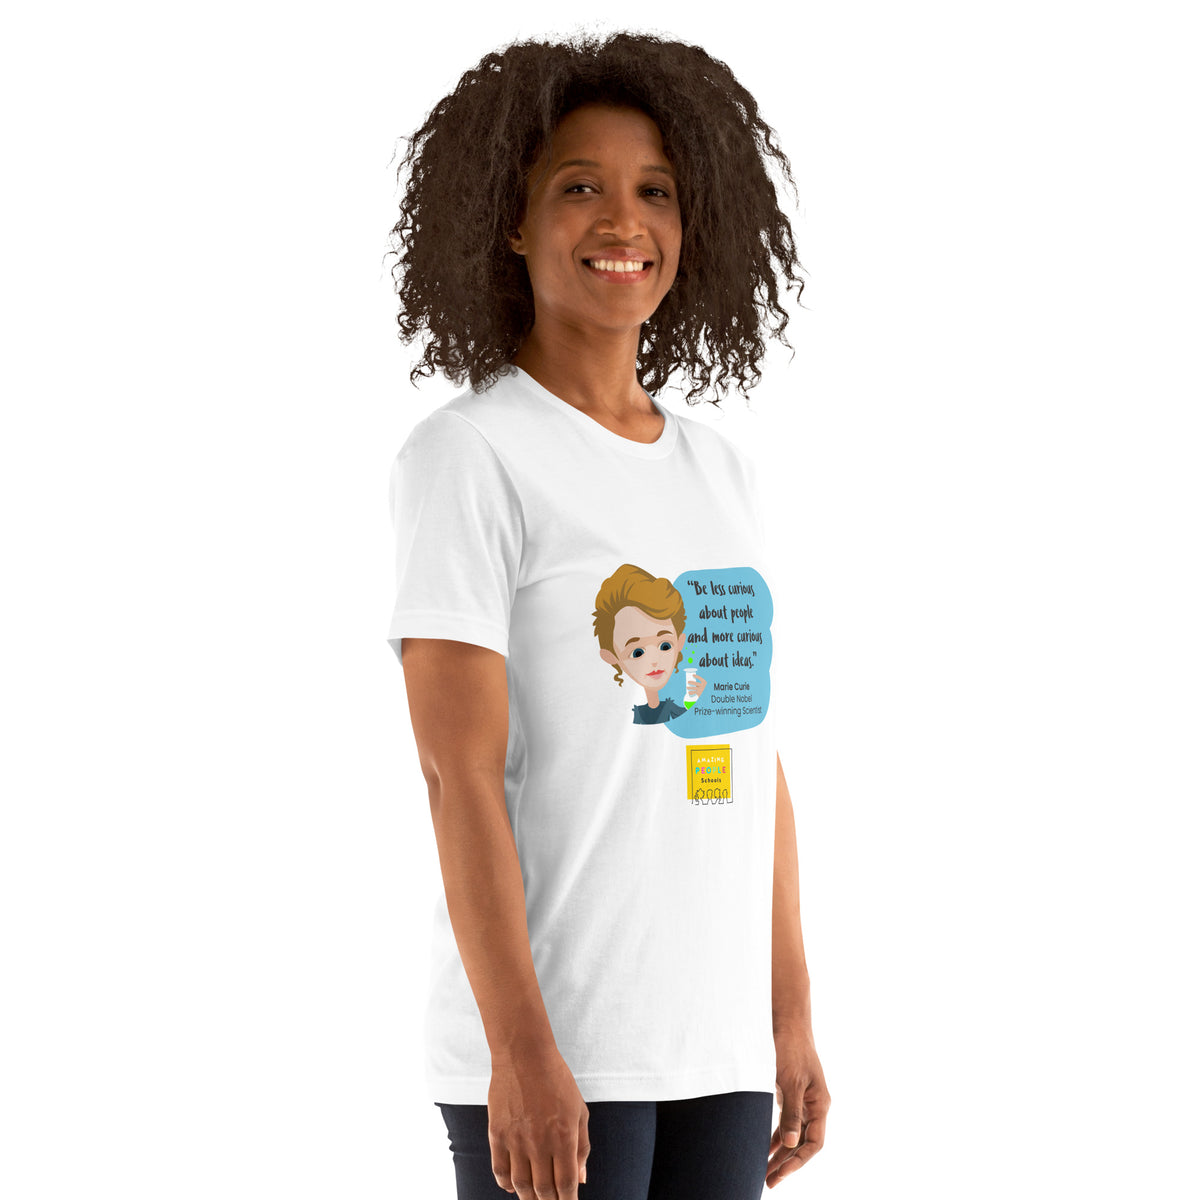 Marie Curie Unisex T-shirt